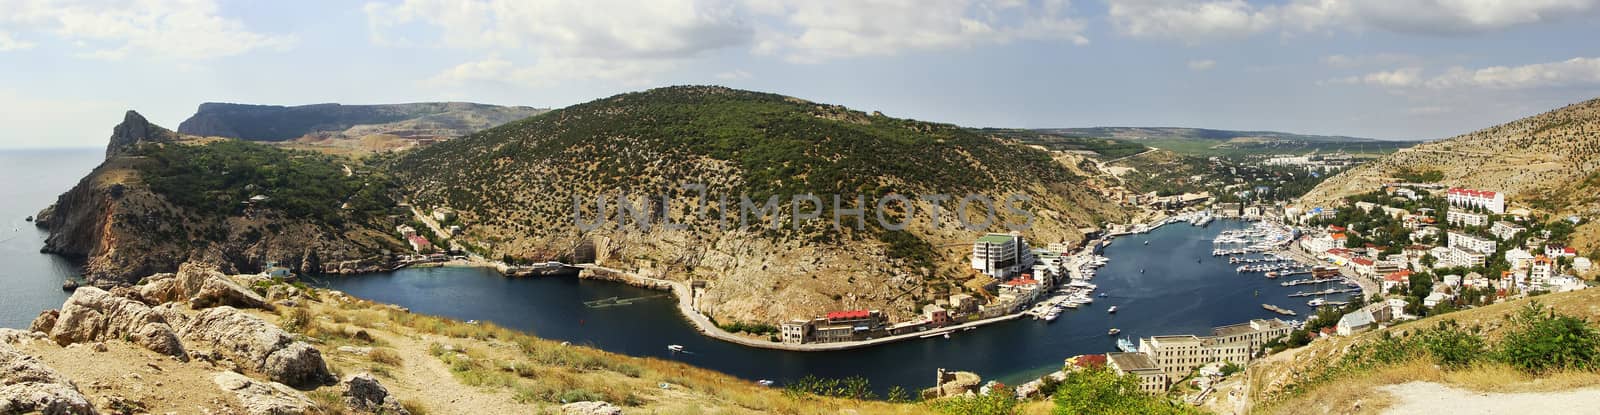 Panoramic view of Balaklava Bay, Crimea, Ukraine